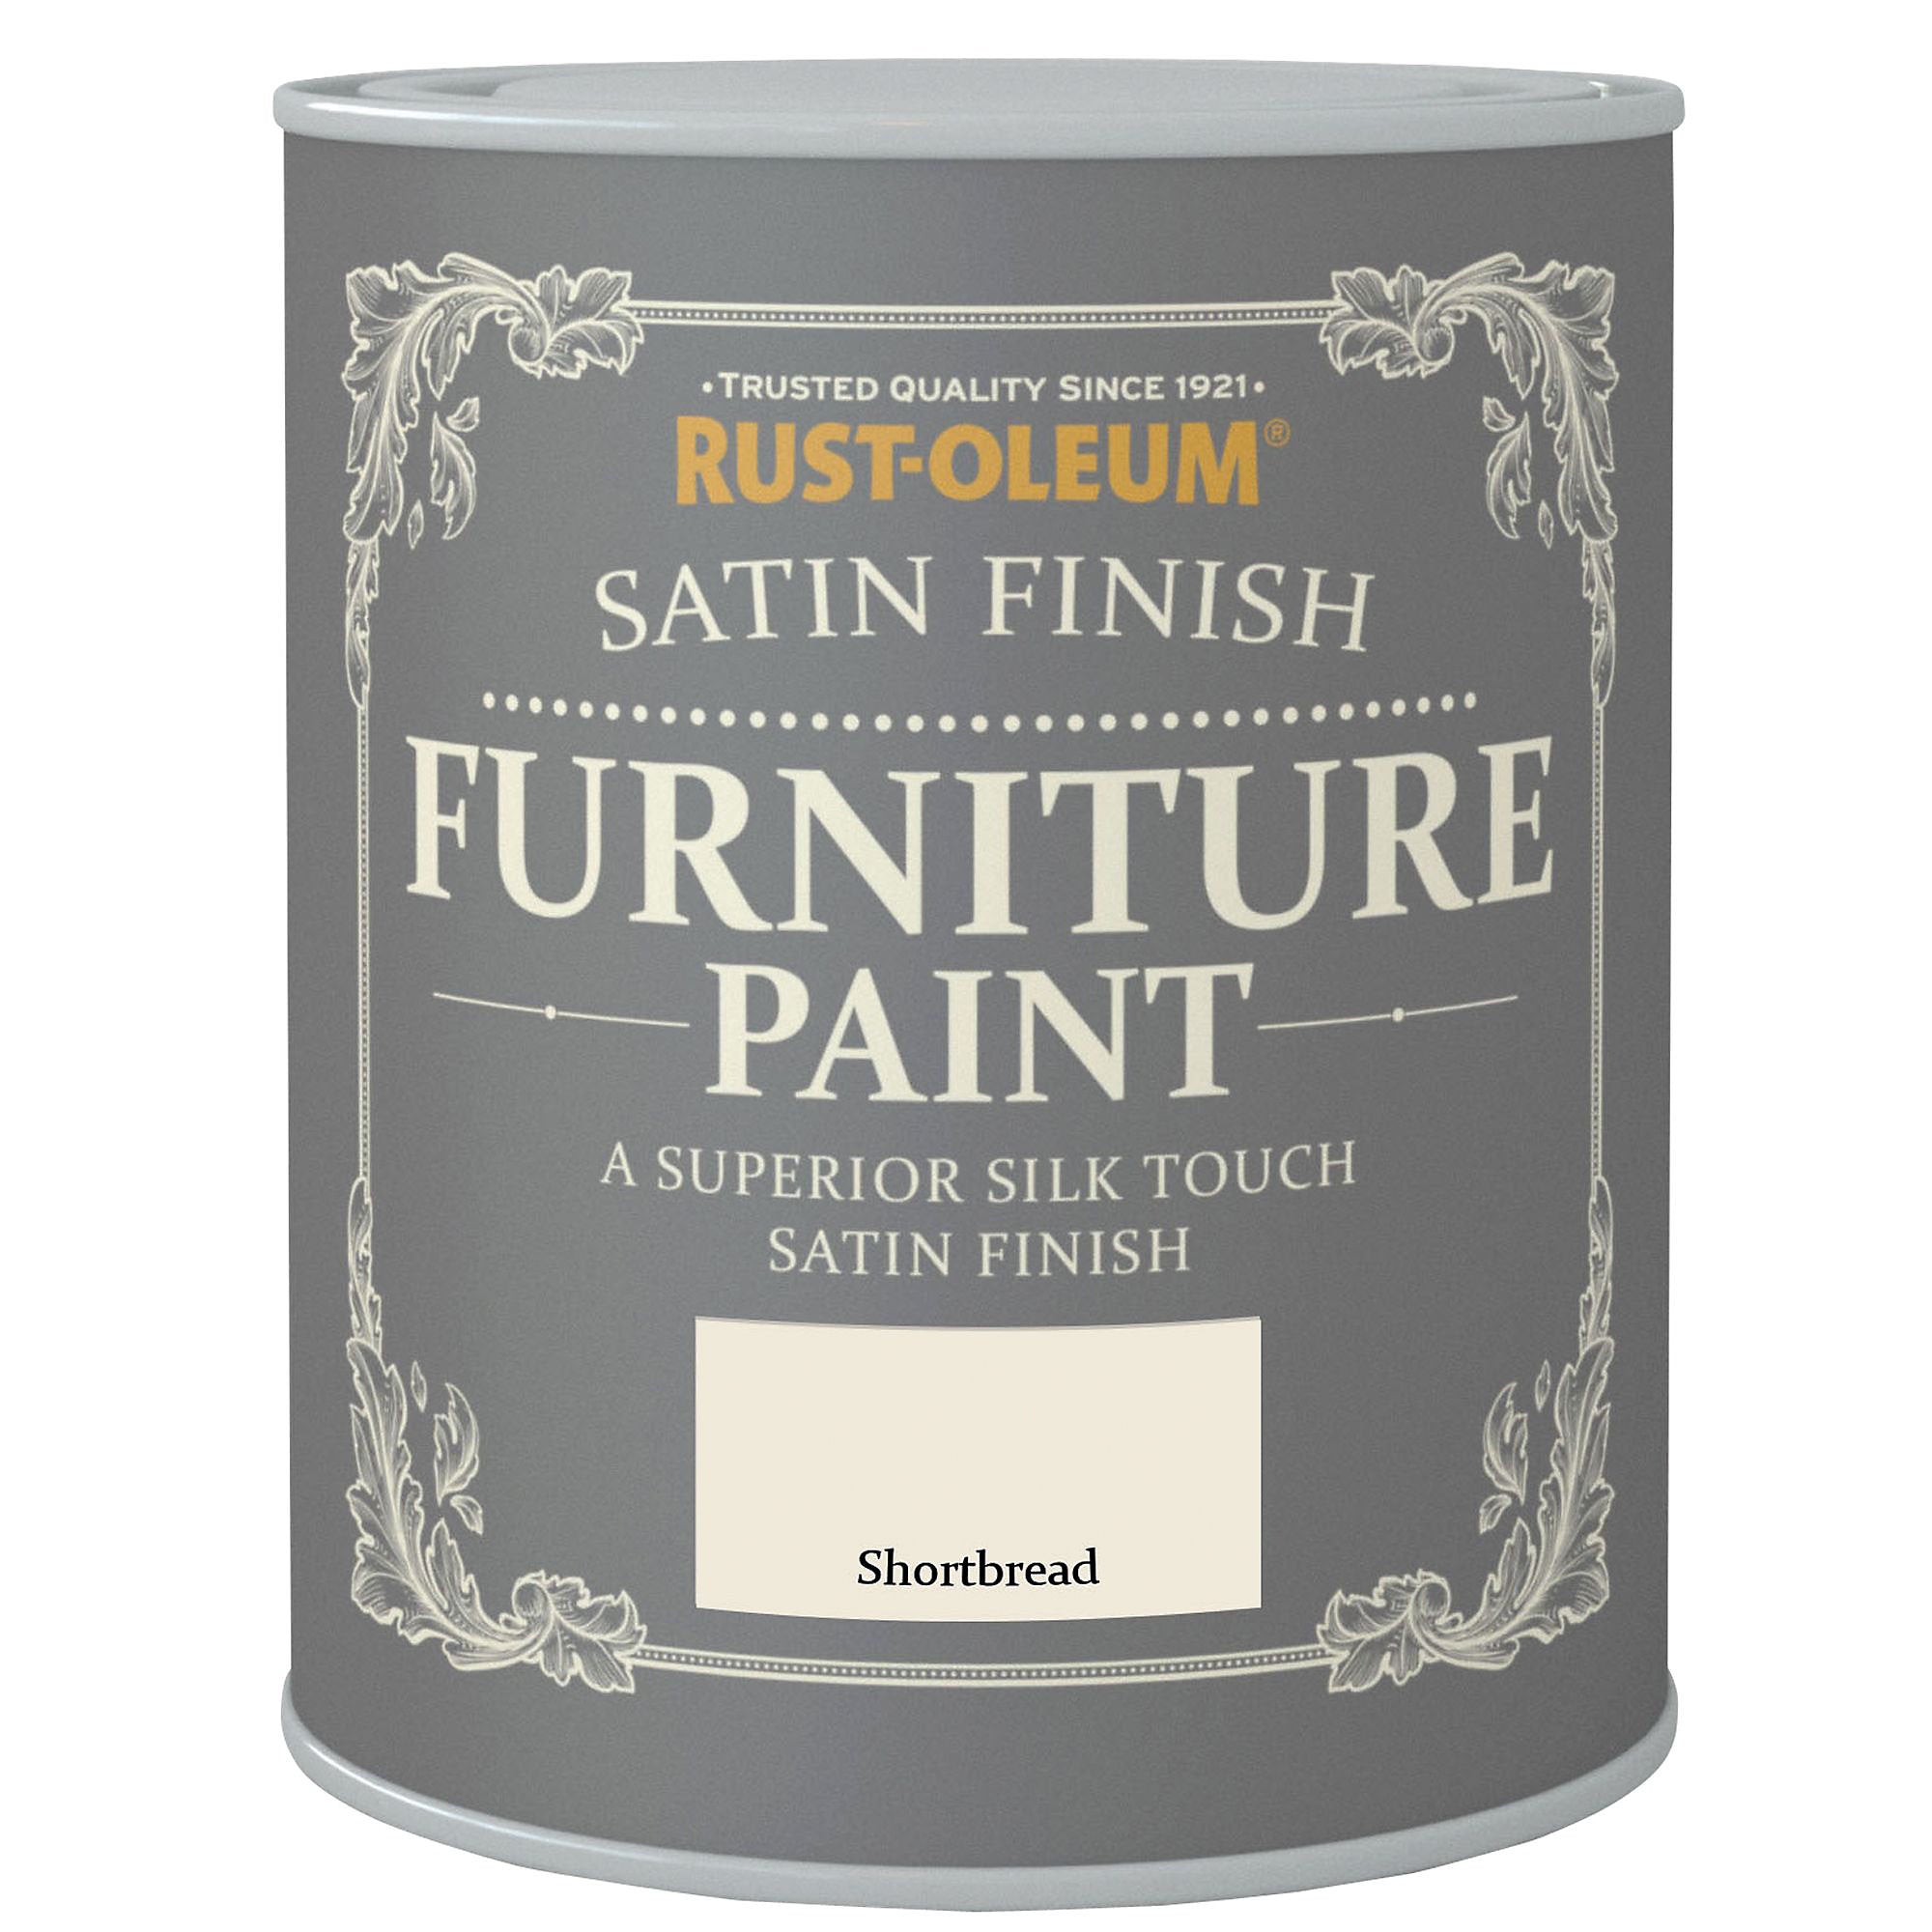 Rust-Oleum Furniture paint,750ml-2513